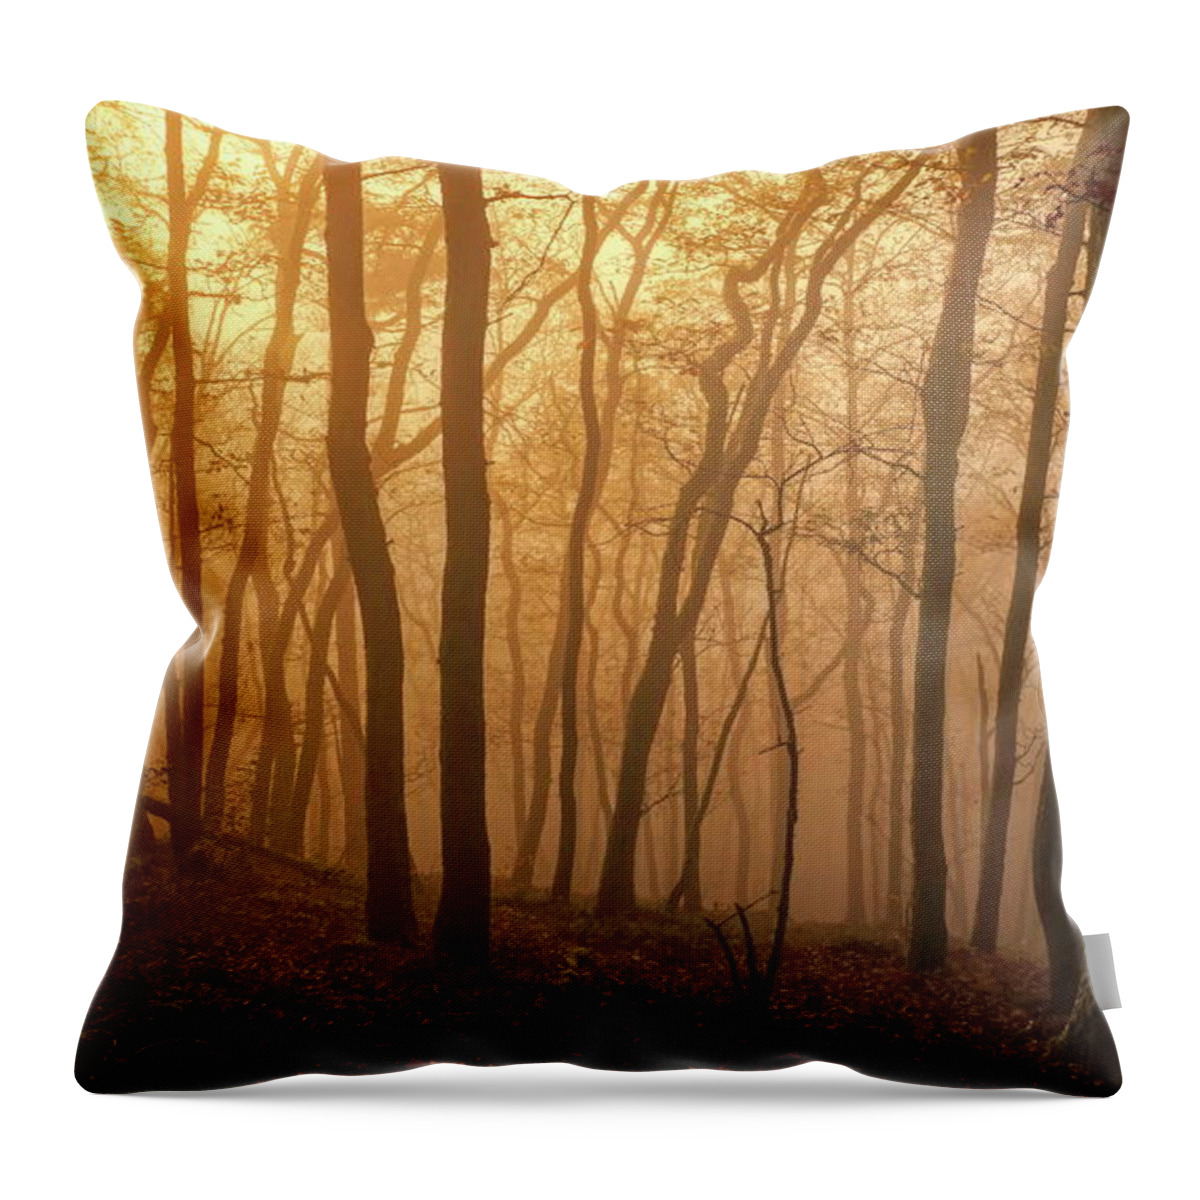 Estock Throw Pillow featuring the digital art Mysterious Woods by Hans-peter Merten